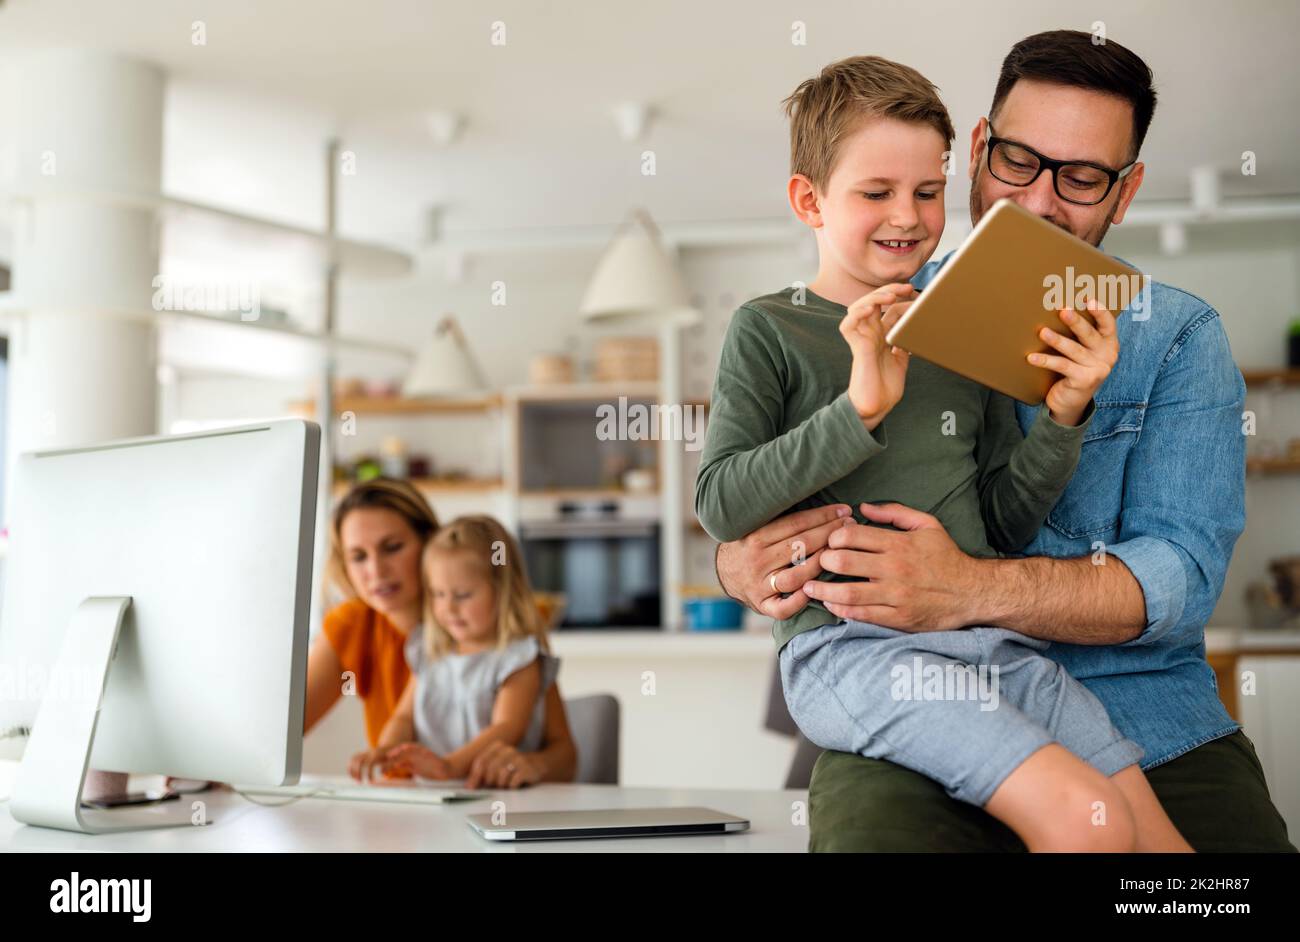 Online-Bildungskonzept der Produktfamilie der Gerätetechnologie. Glückliche Familie mit digitalen Geräten zu Hause. Stockfoto